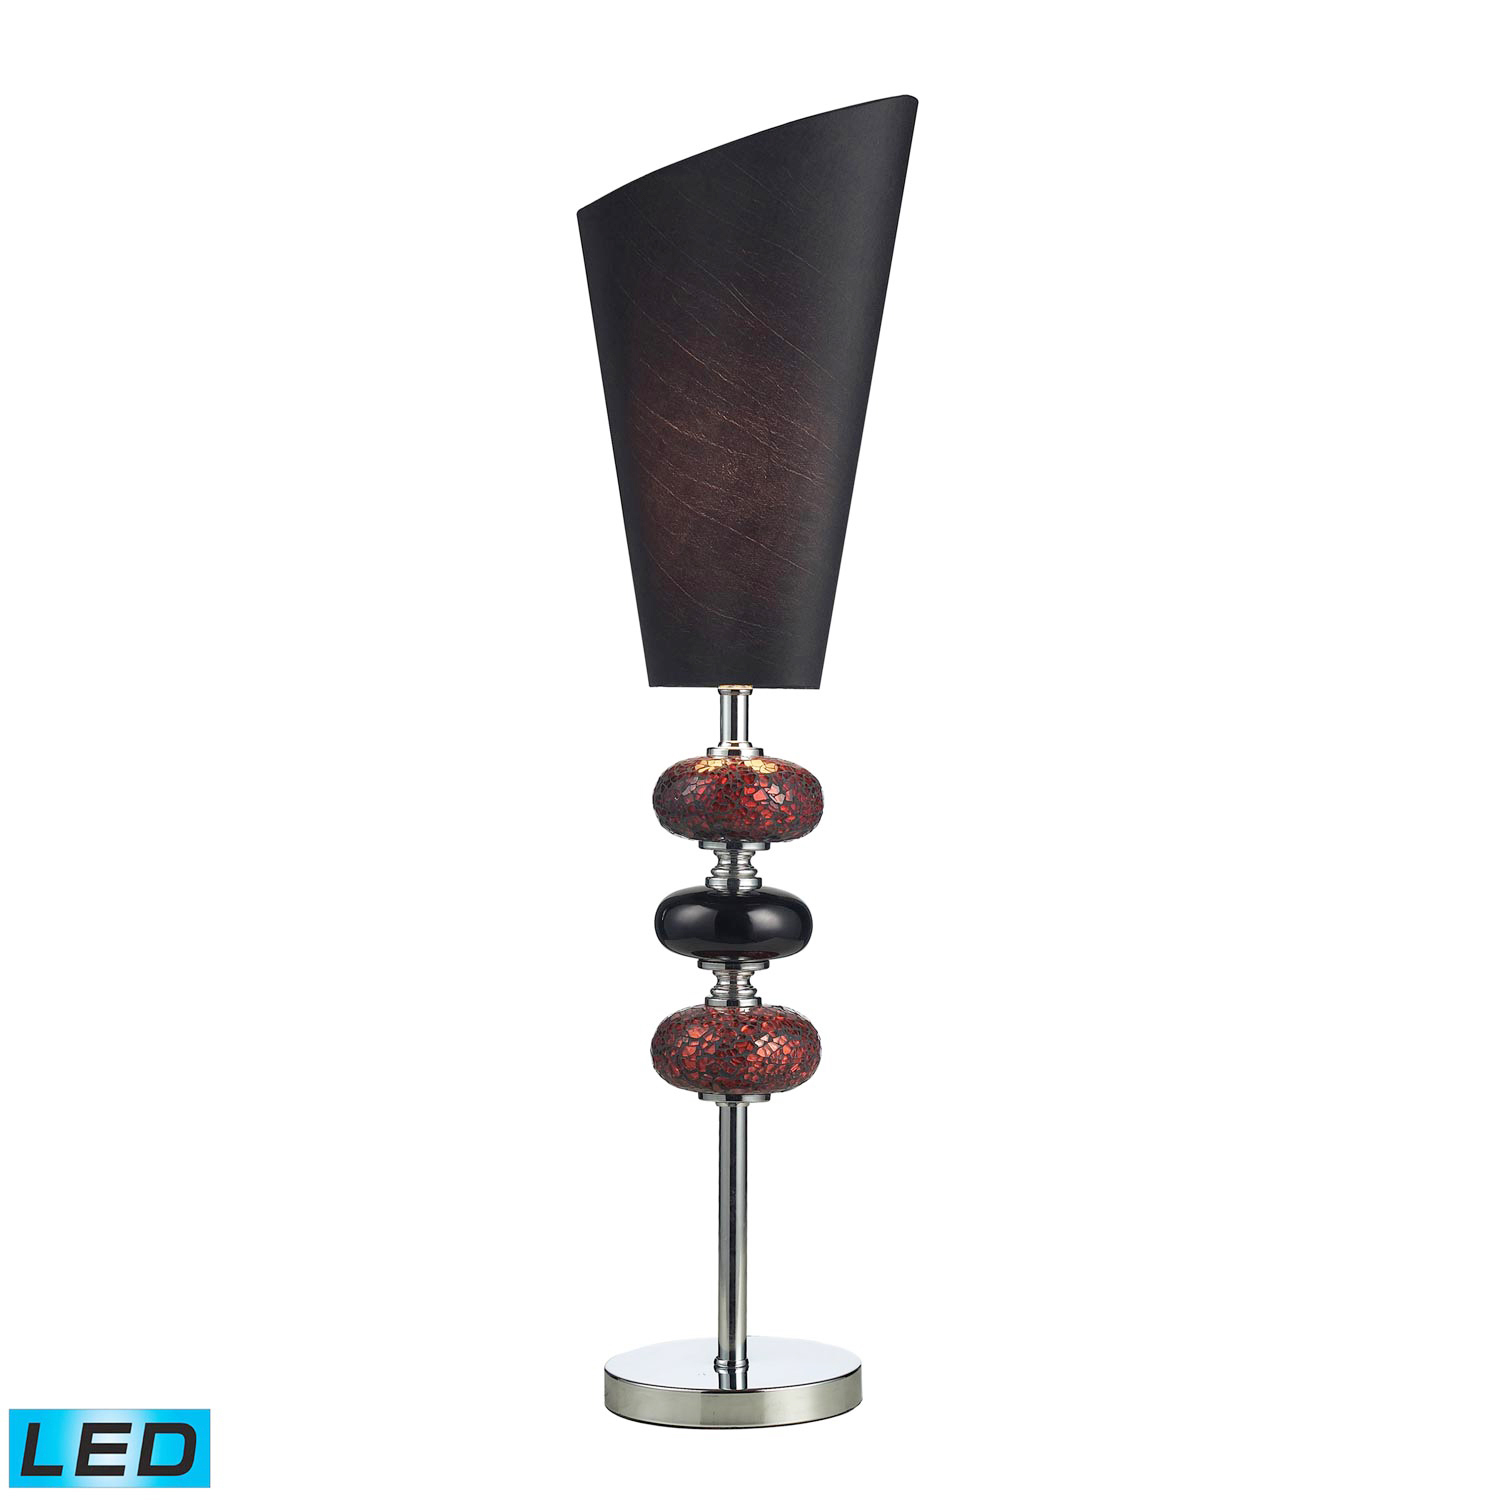 Elk Lighting 111-1081-LED Delta Table Lamp - Mossica Glass, Chrome